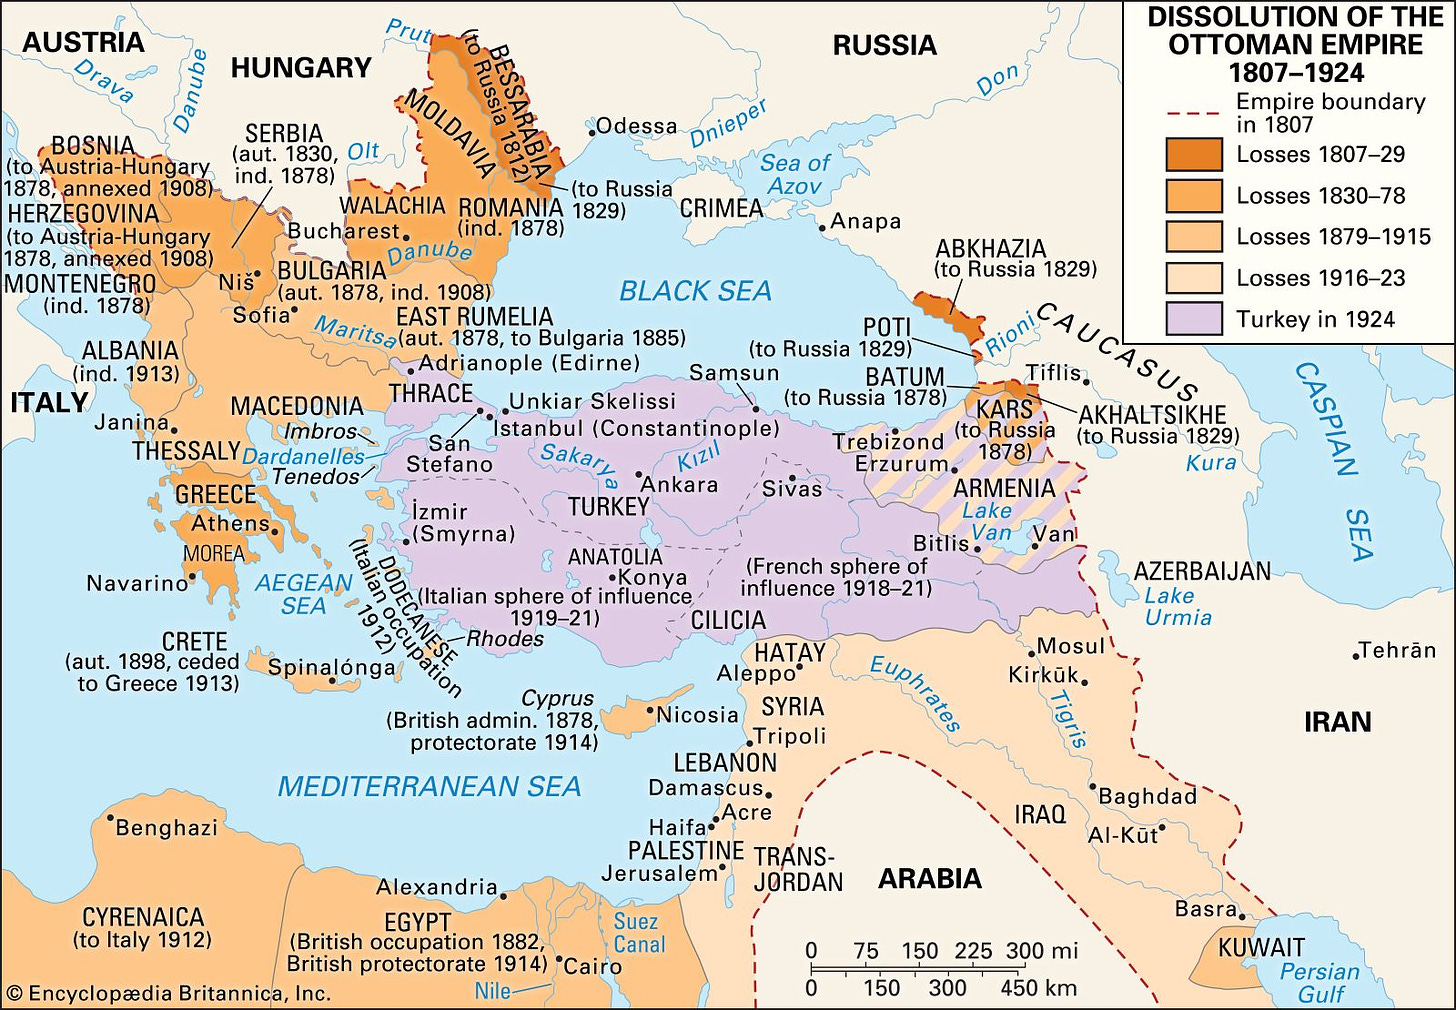 Ottoman Empire - The empire from 1807 to 1920 | Britannica